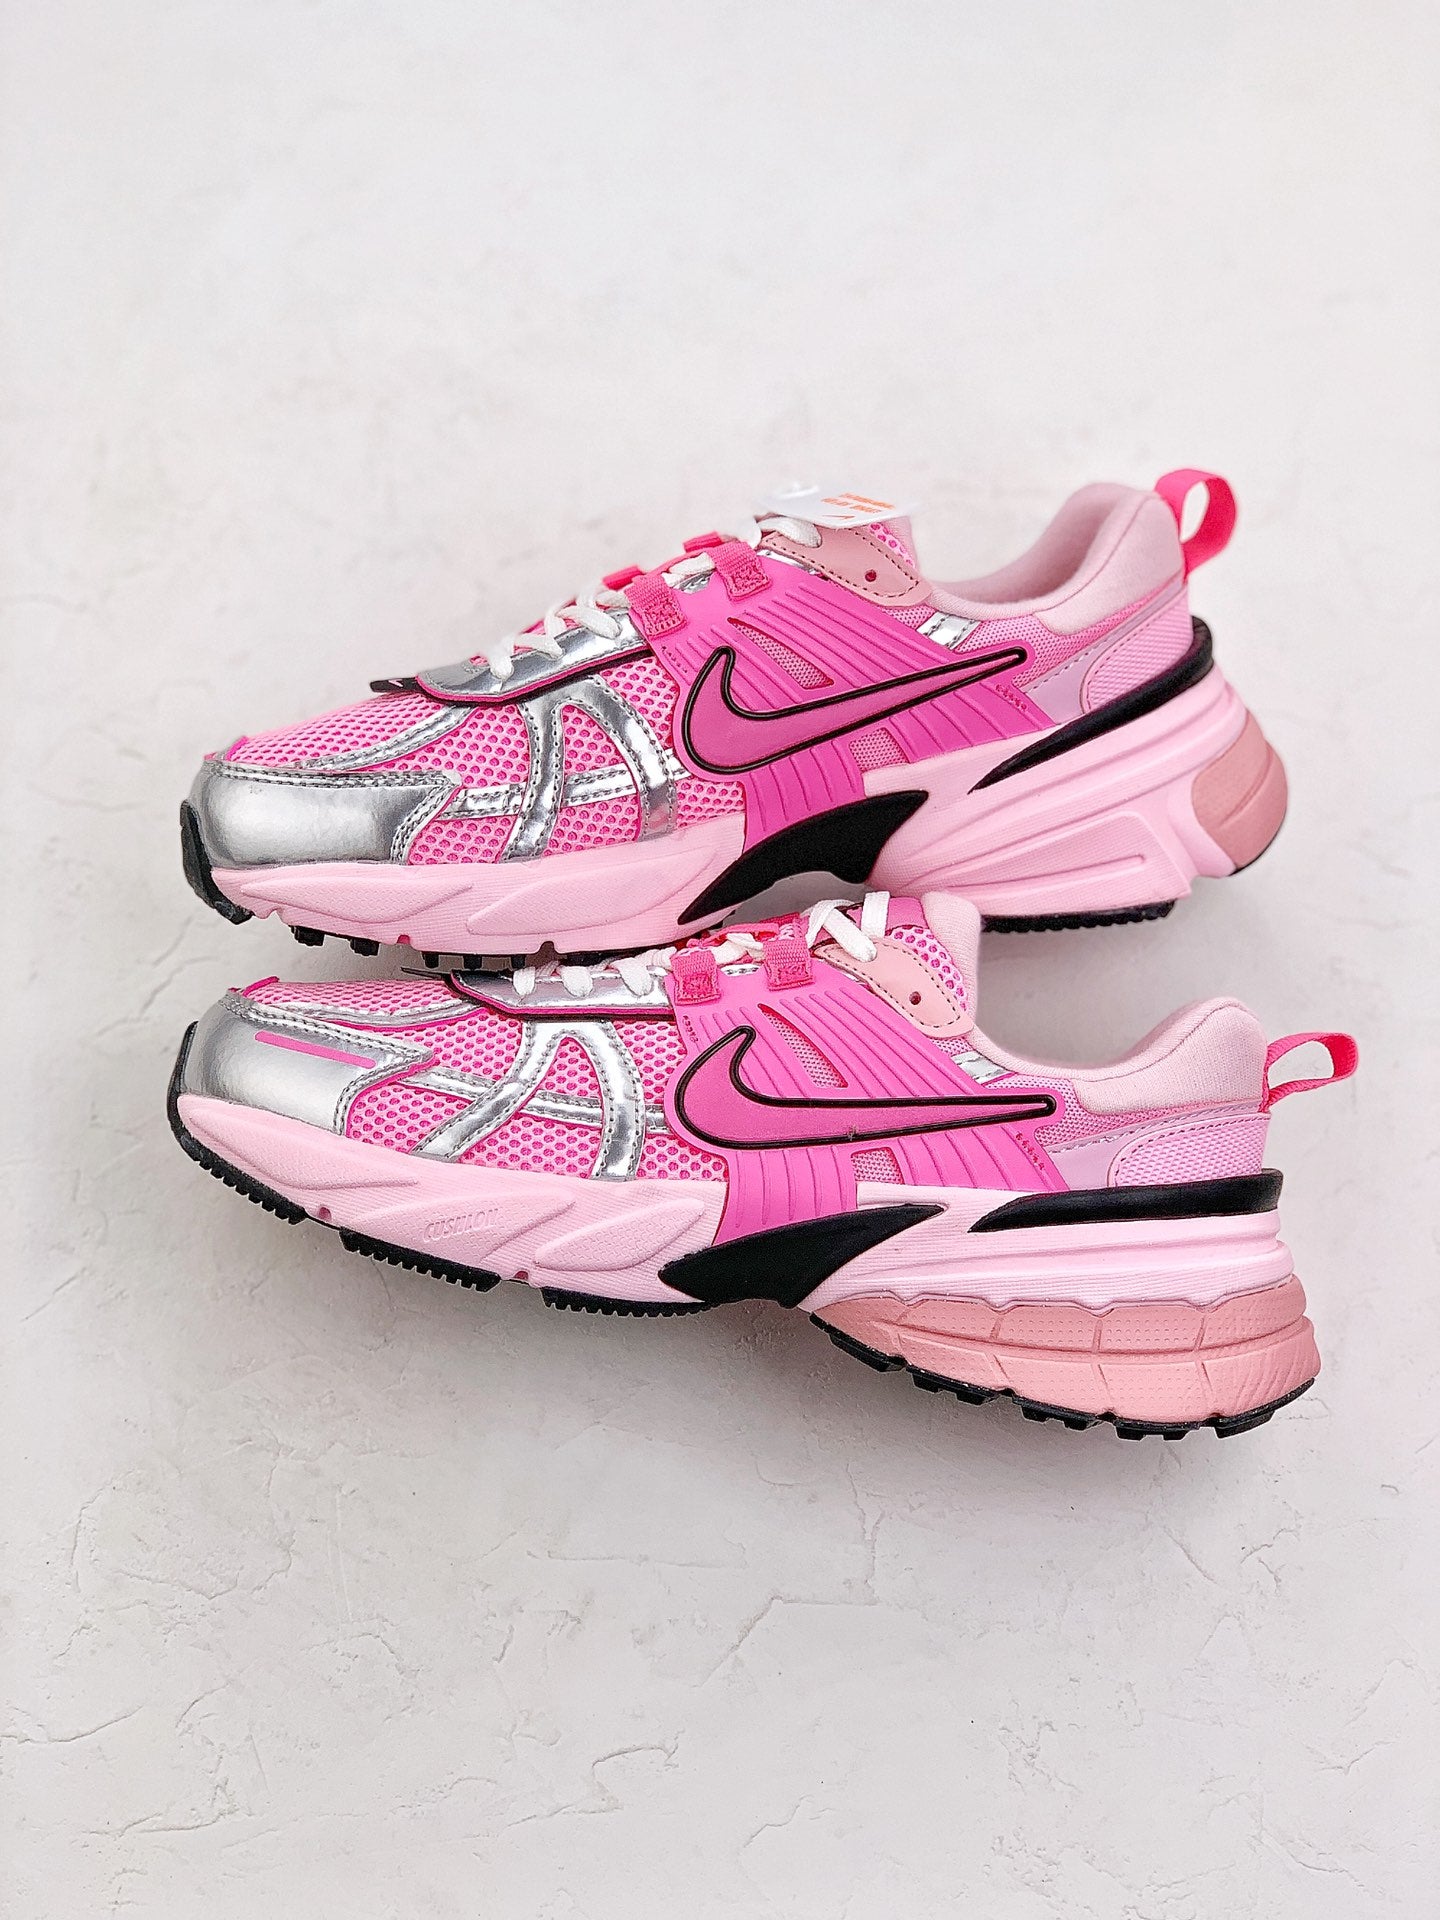 Nike V2k run navy pink